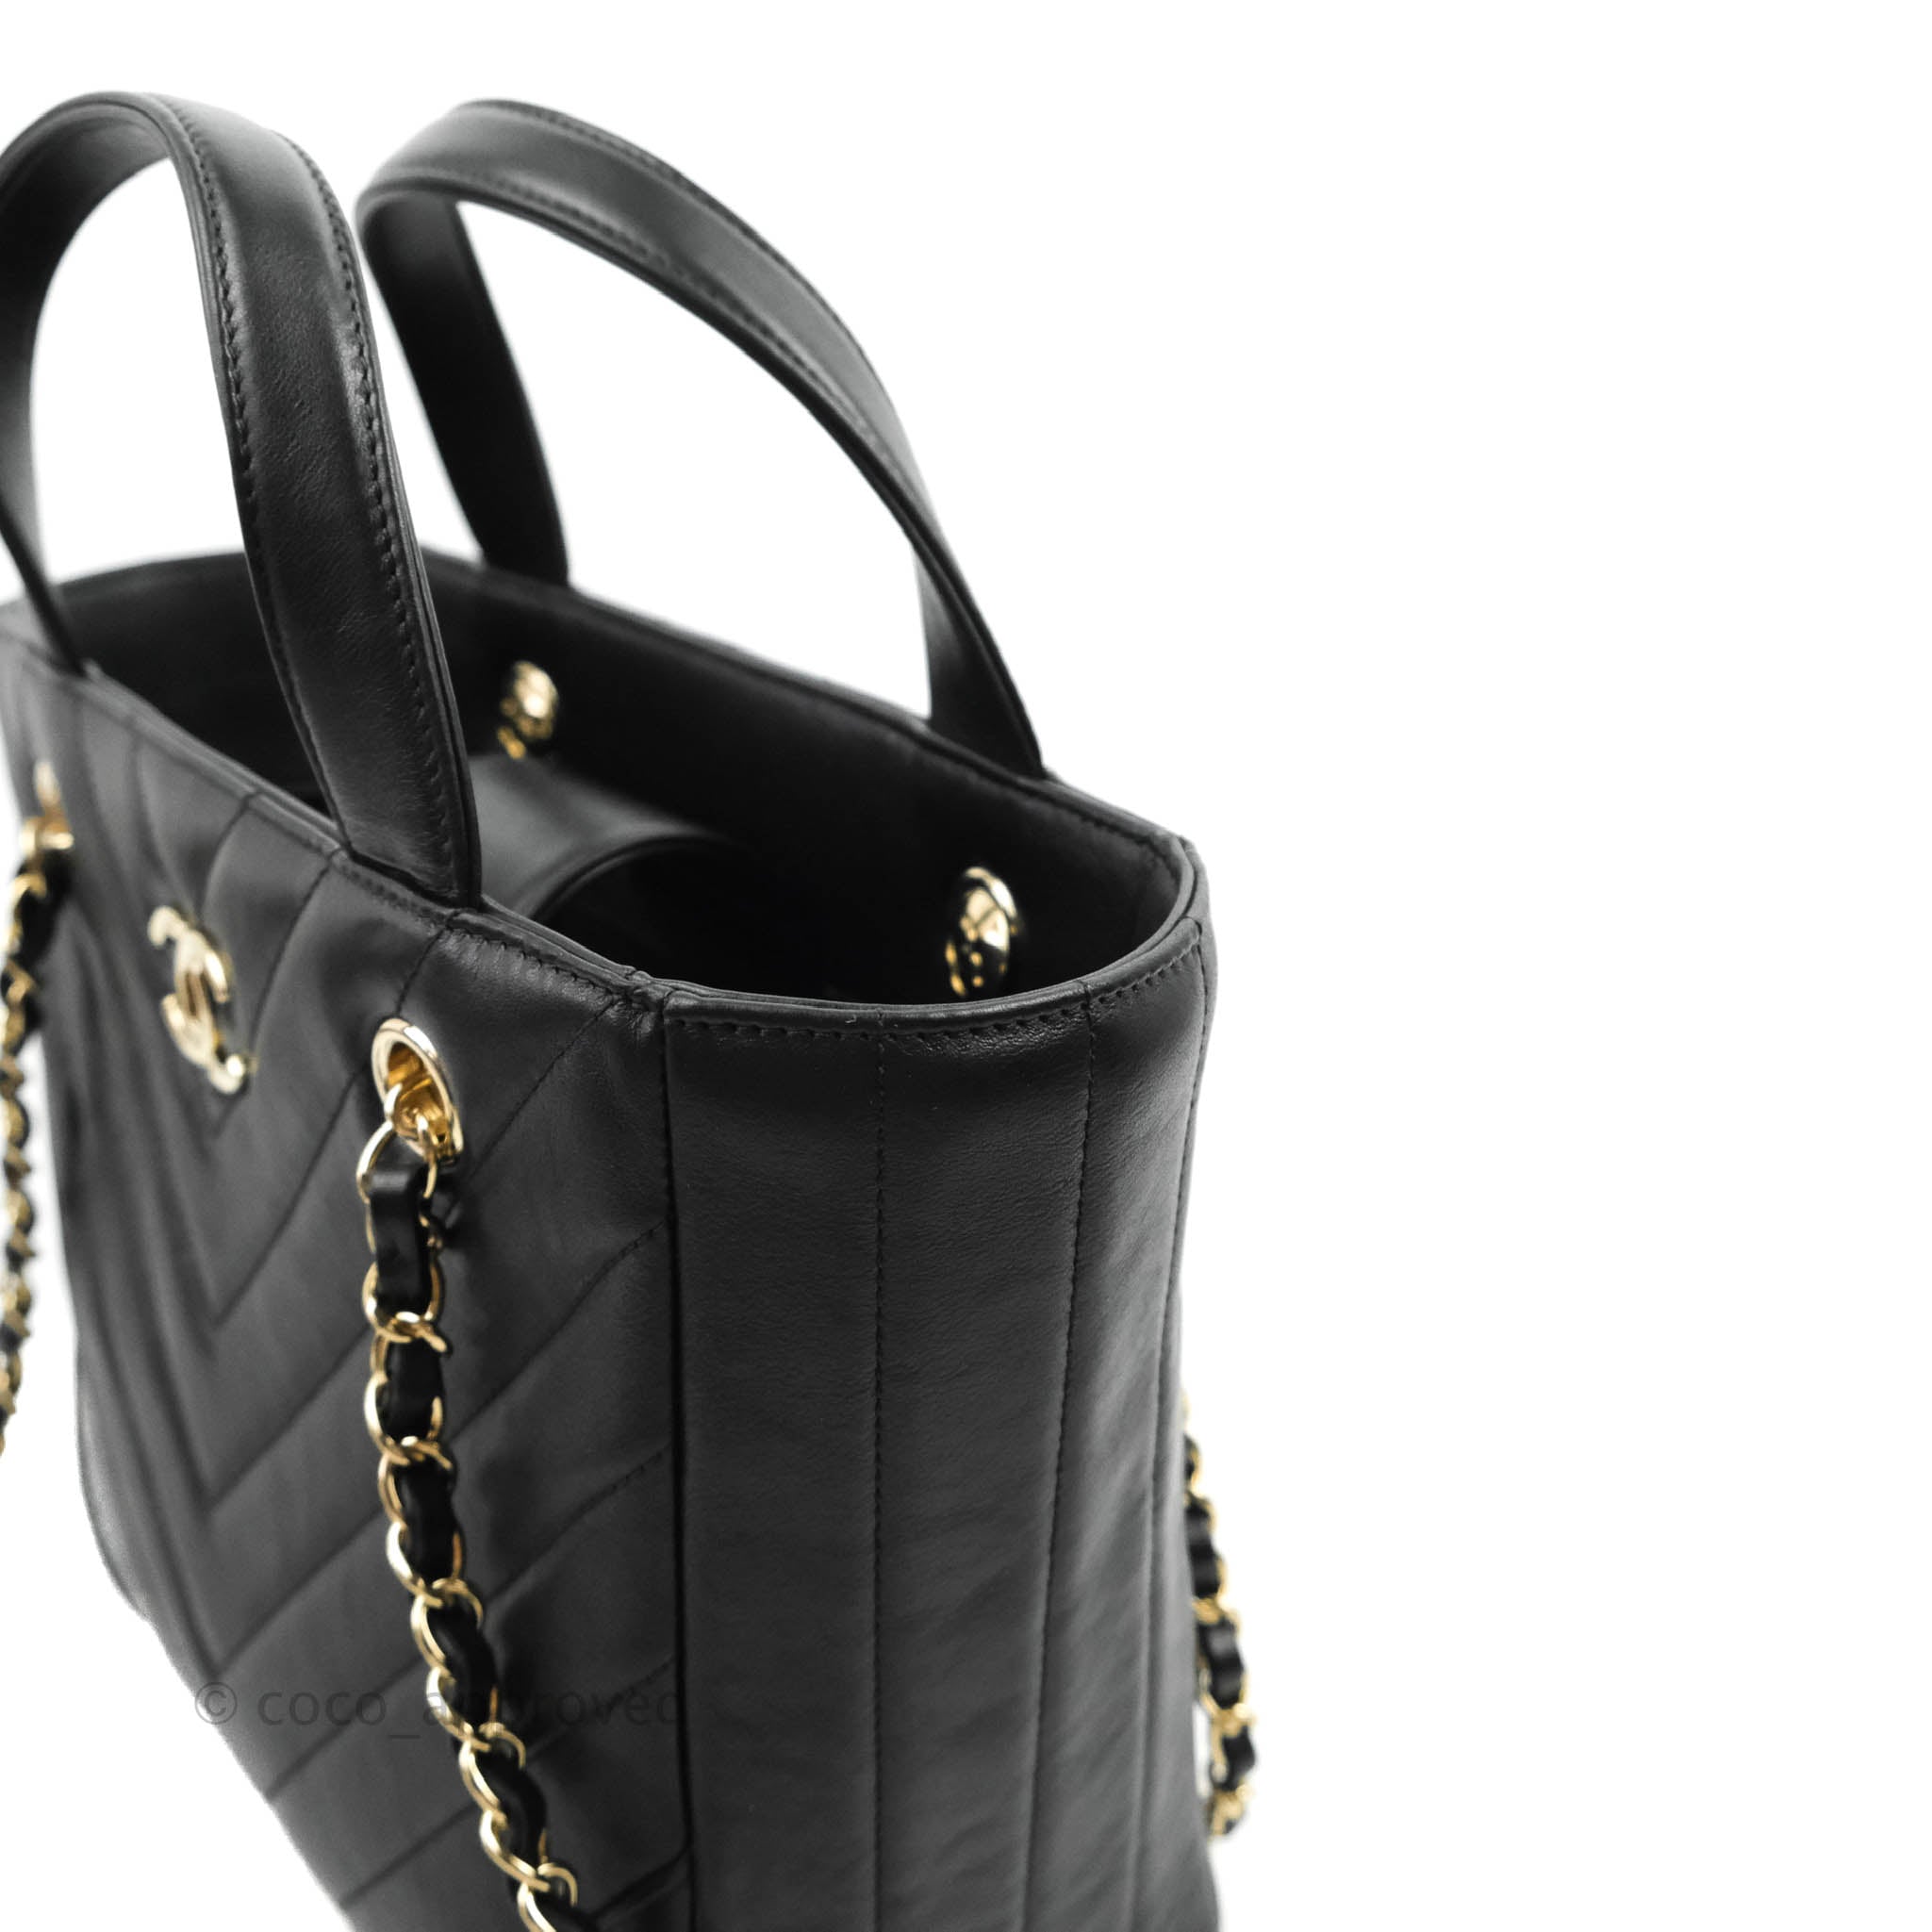 Chanel Small Chevron Tote Bag Black Calfskin Gold Hardware – Coco